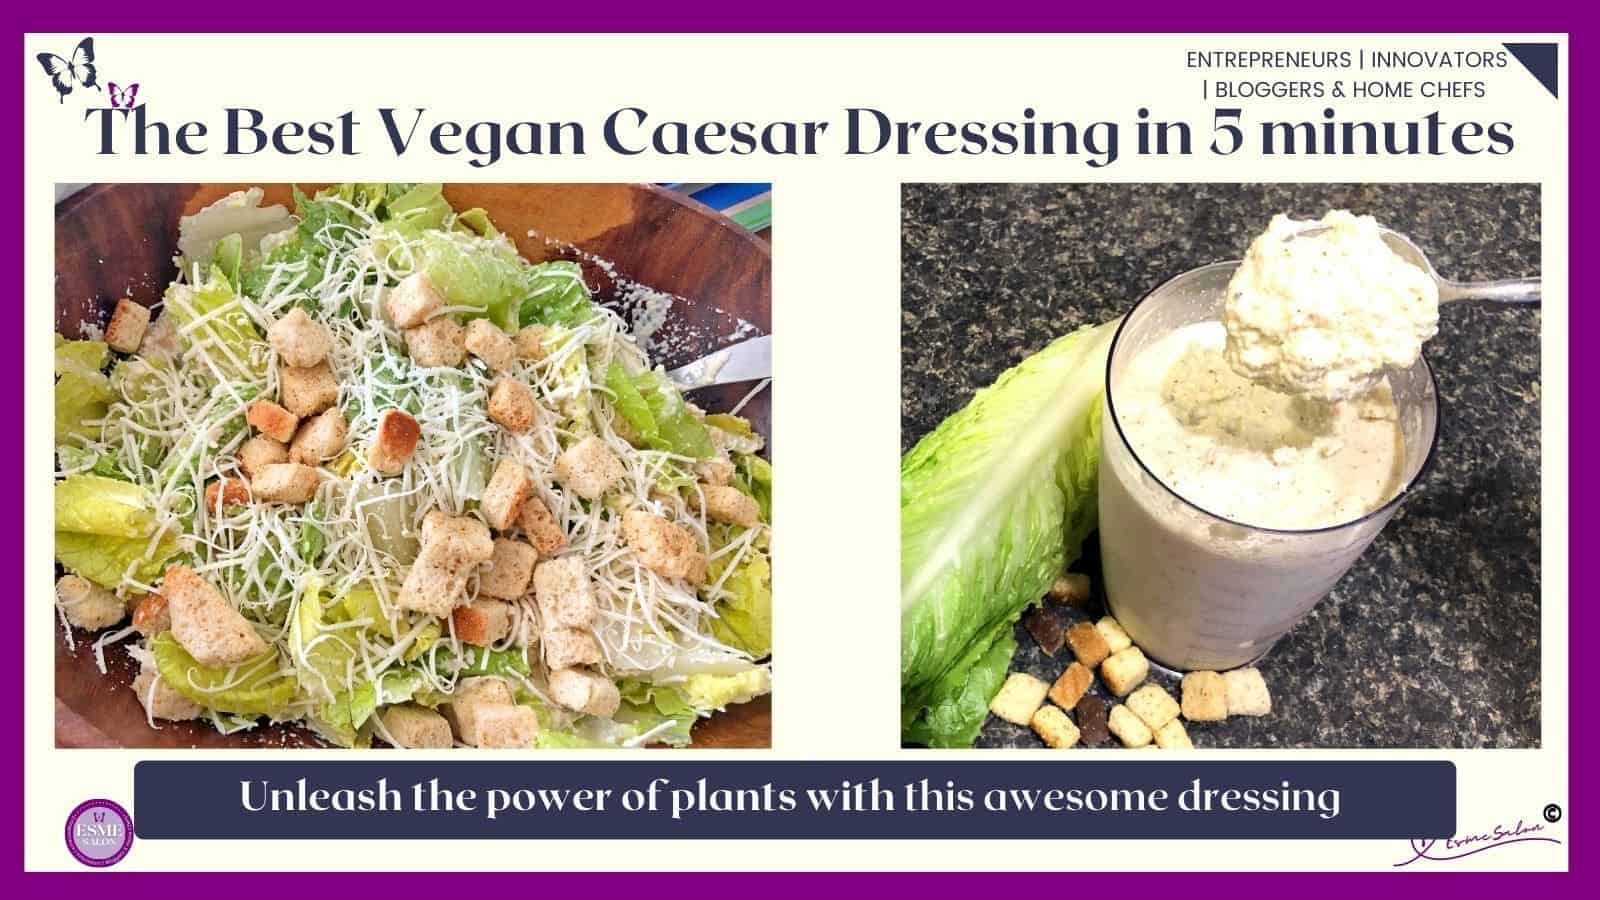 An image of Vegan Caesar Dressing in 5 minutes